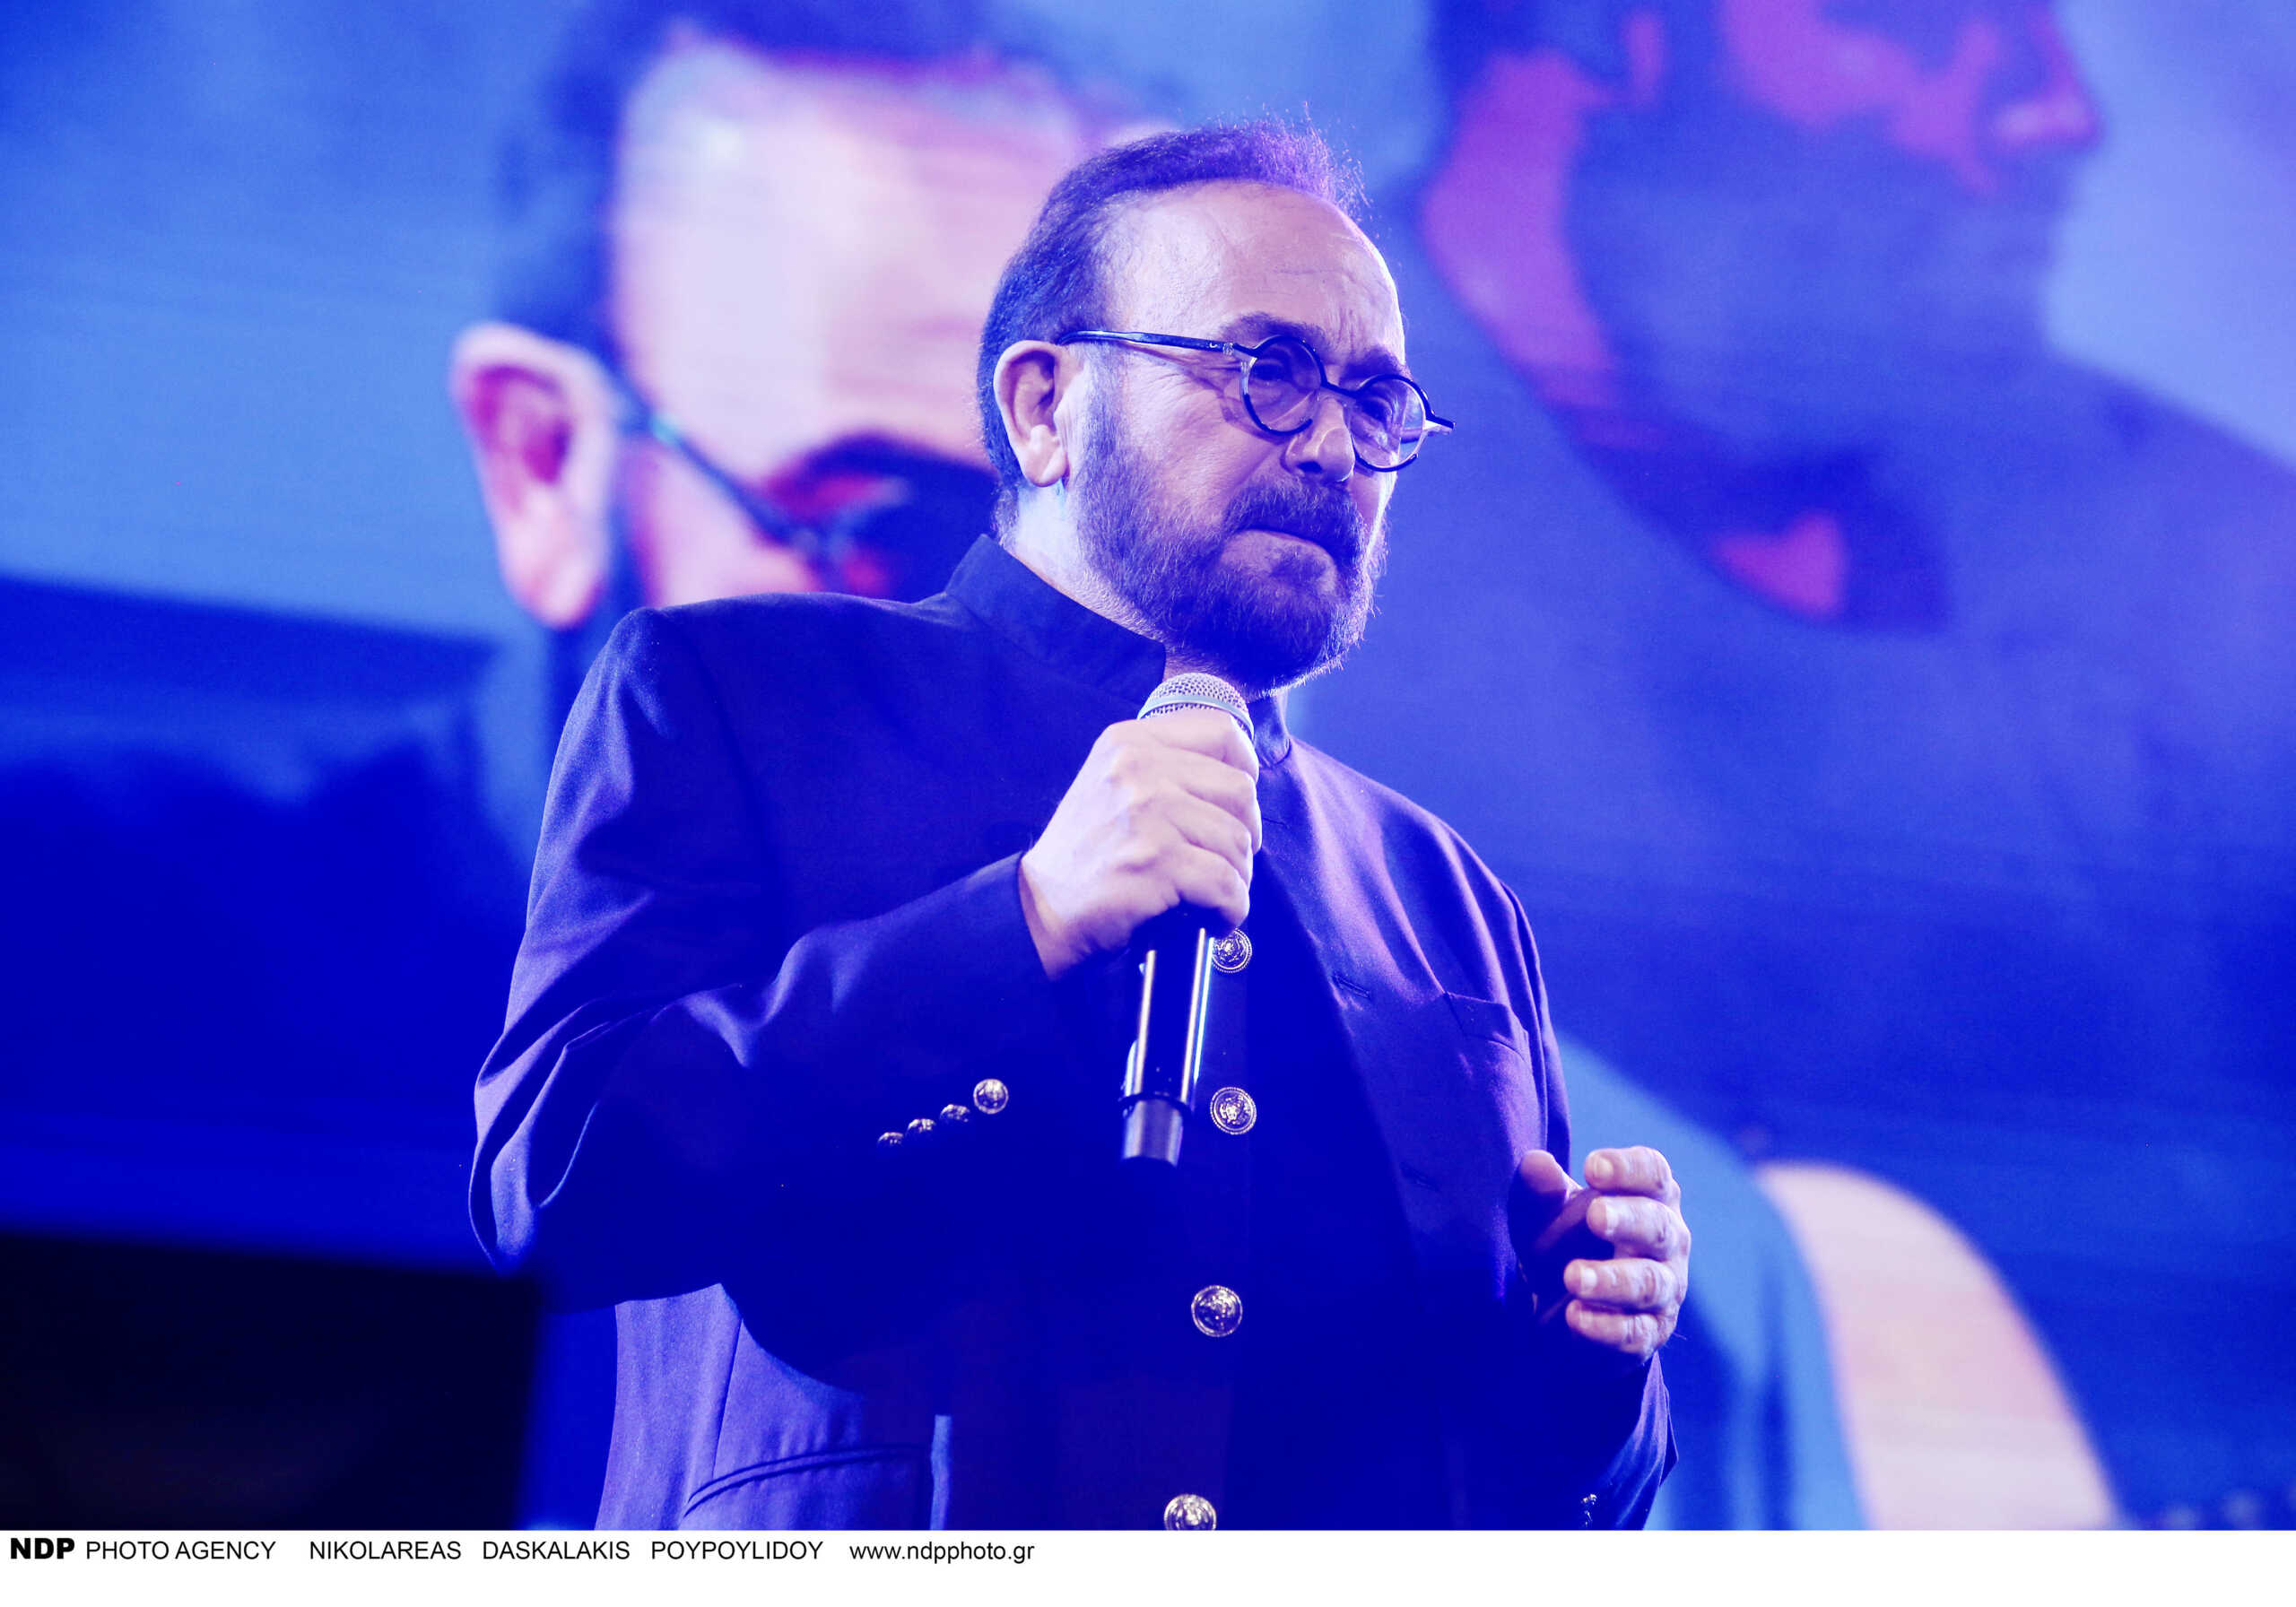 Σταμάτης Γονίδης: Δεν παρακολουθώ Eurovision, ξέρω ότι συμμετέχει κάποια τραγουδίστρια, η Μαρίνα Σάττι